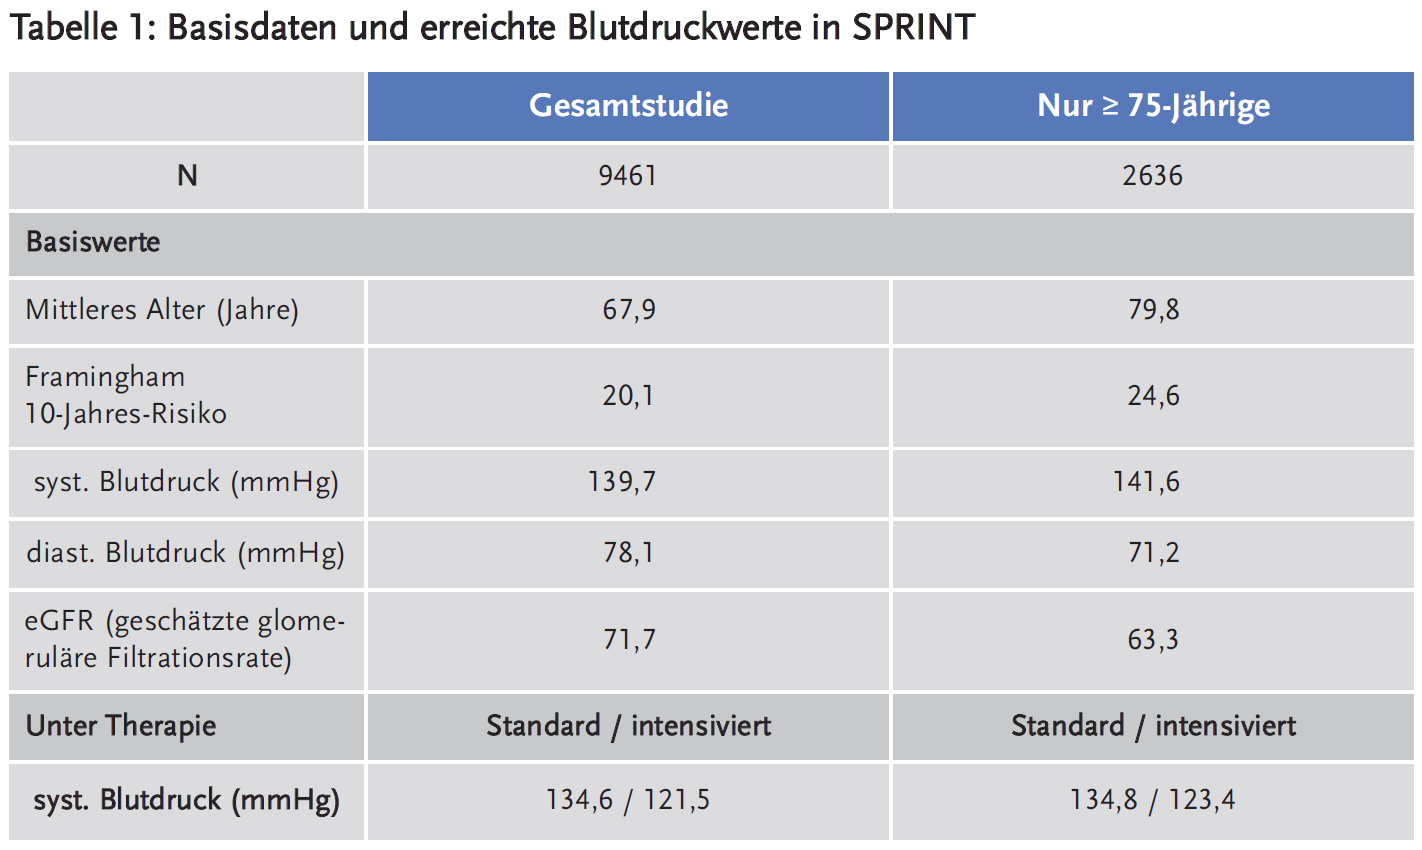 Tabelle 1: Basisdaten und erreichte Blutdruckwerte in SPRINT